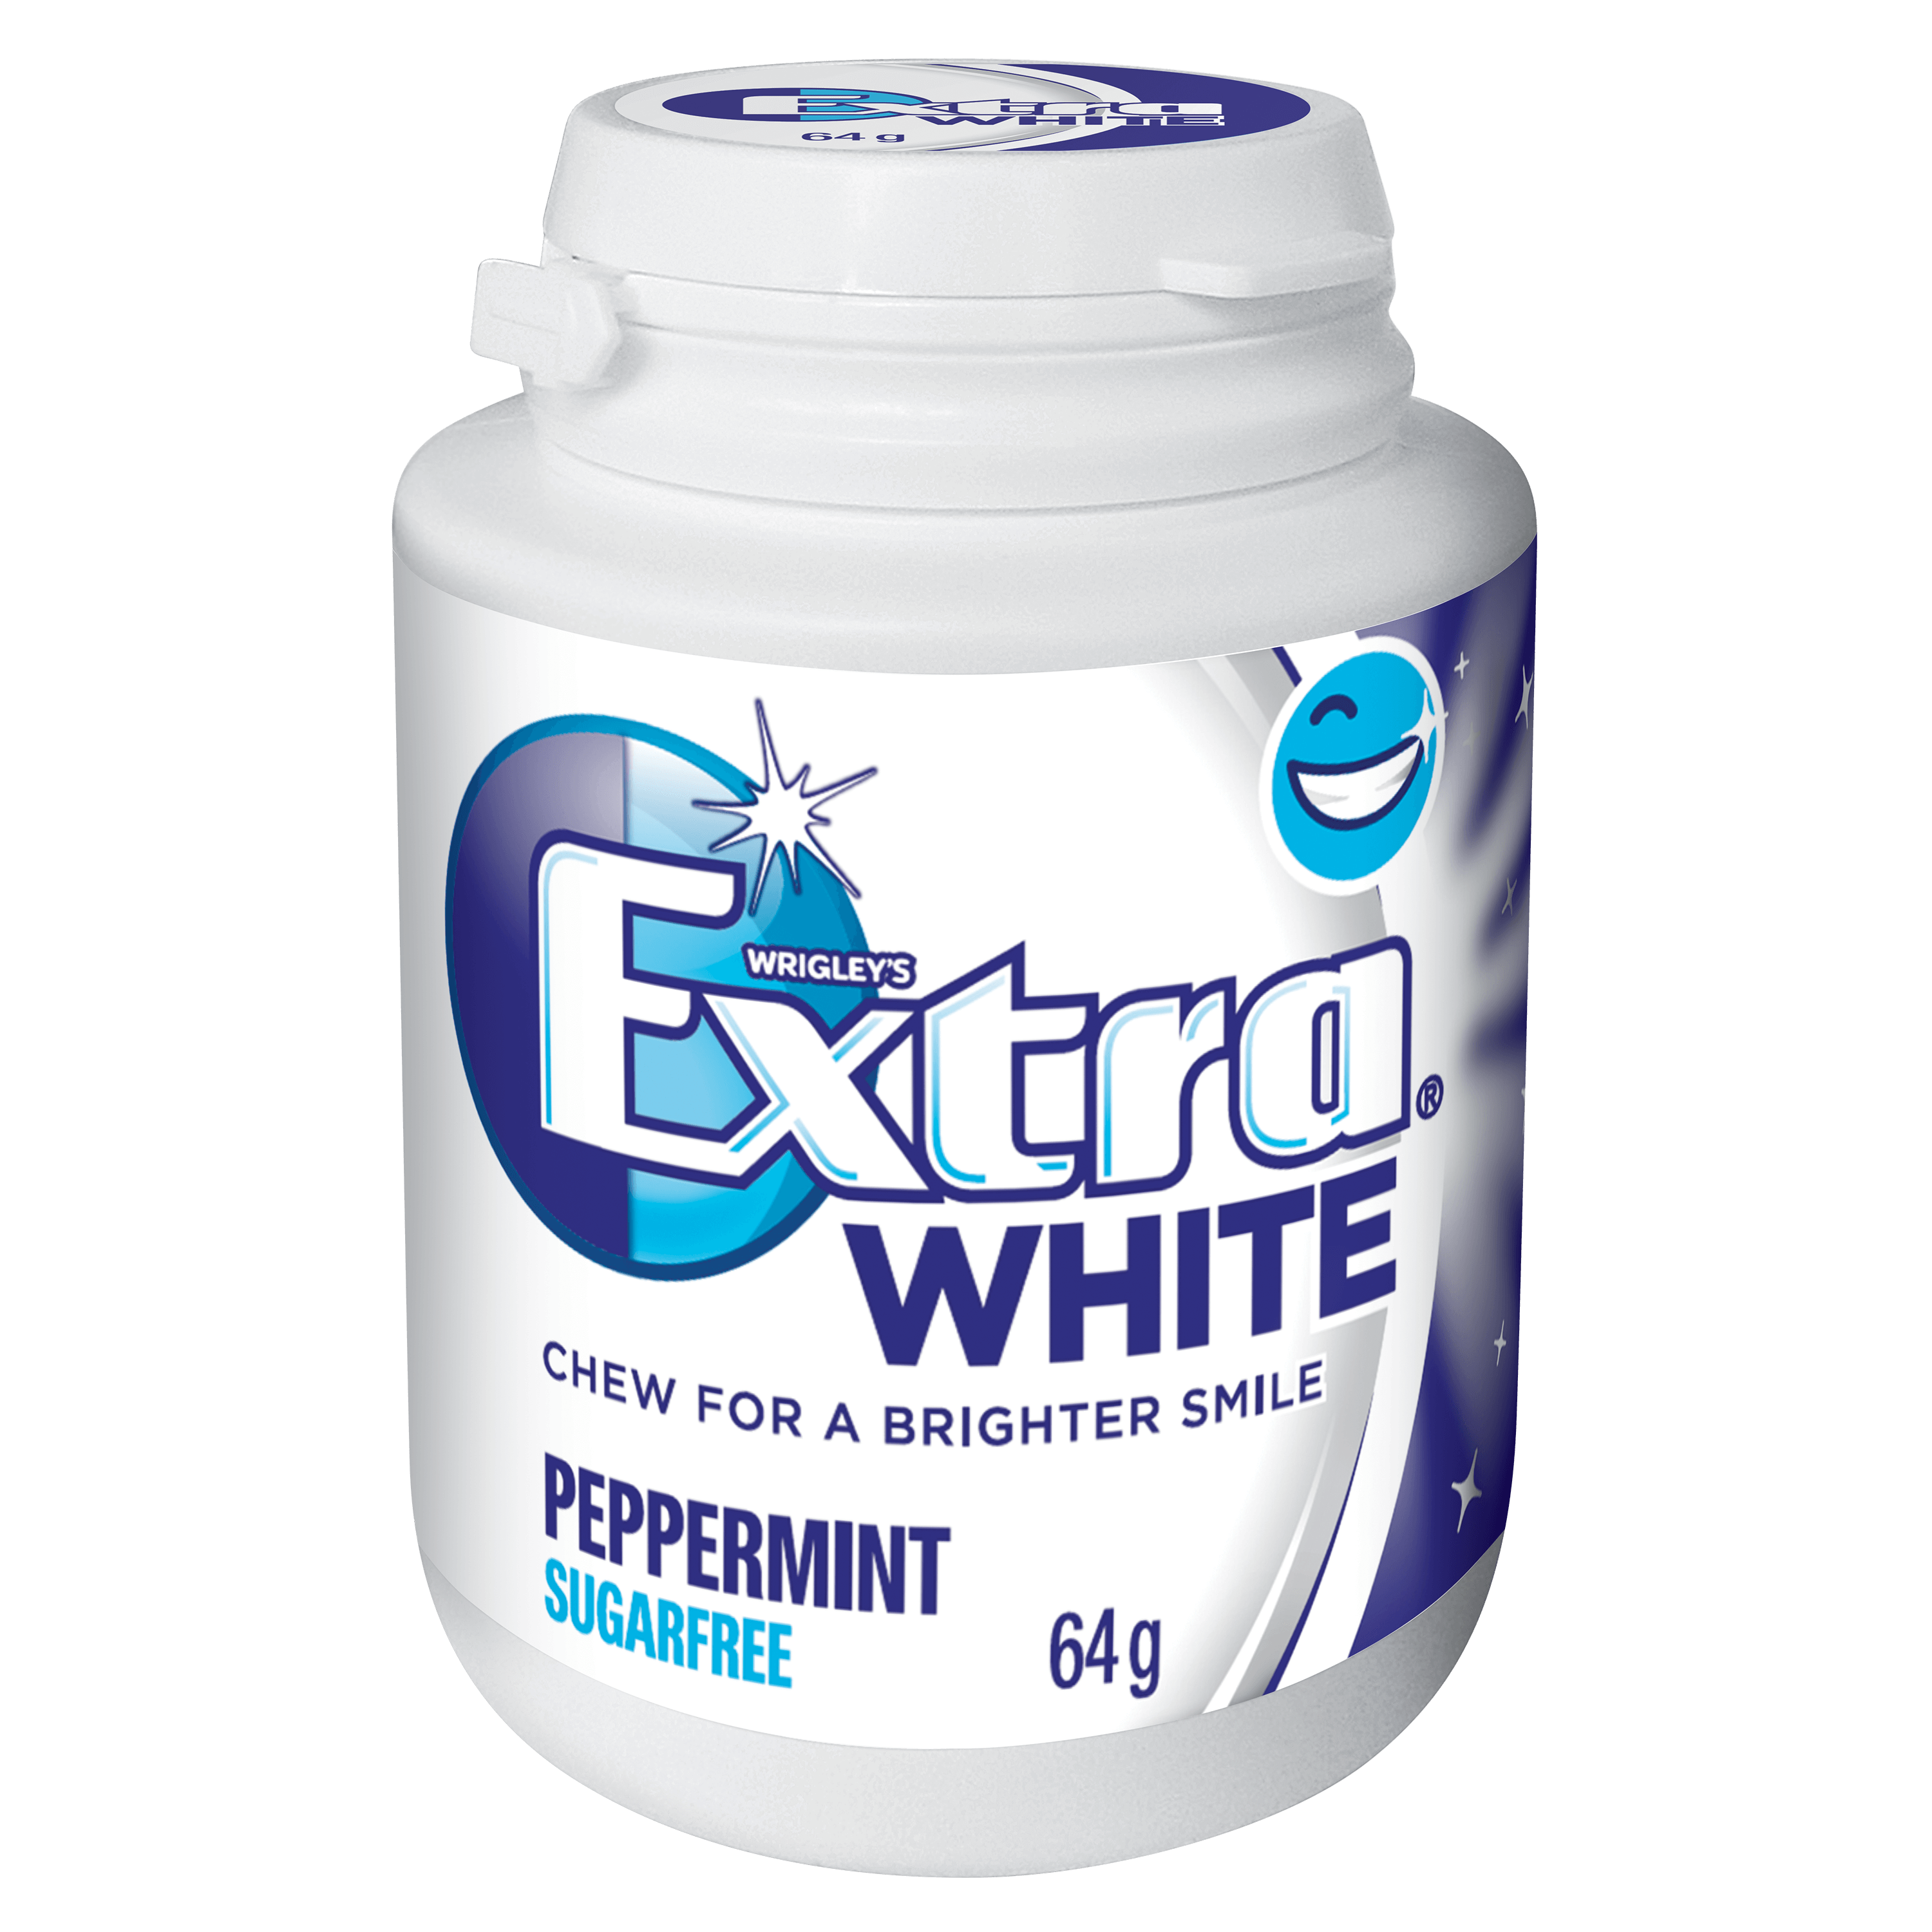 EXTRA White bottle